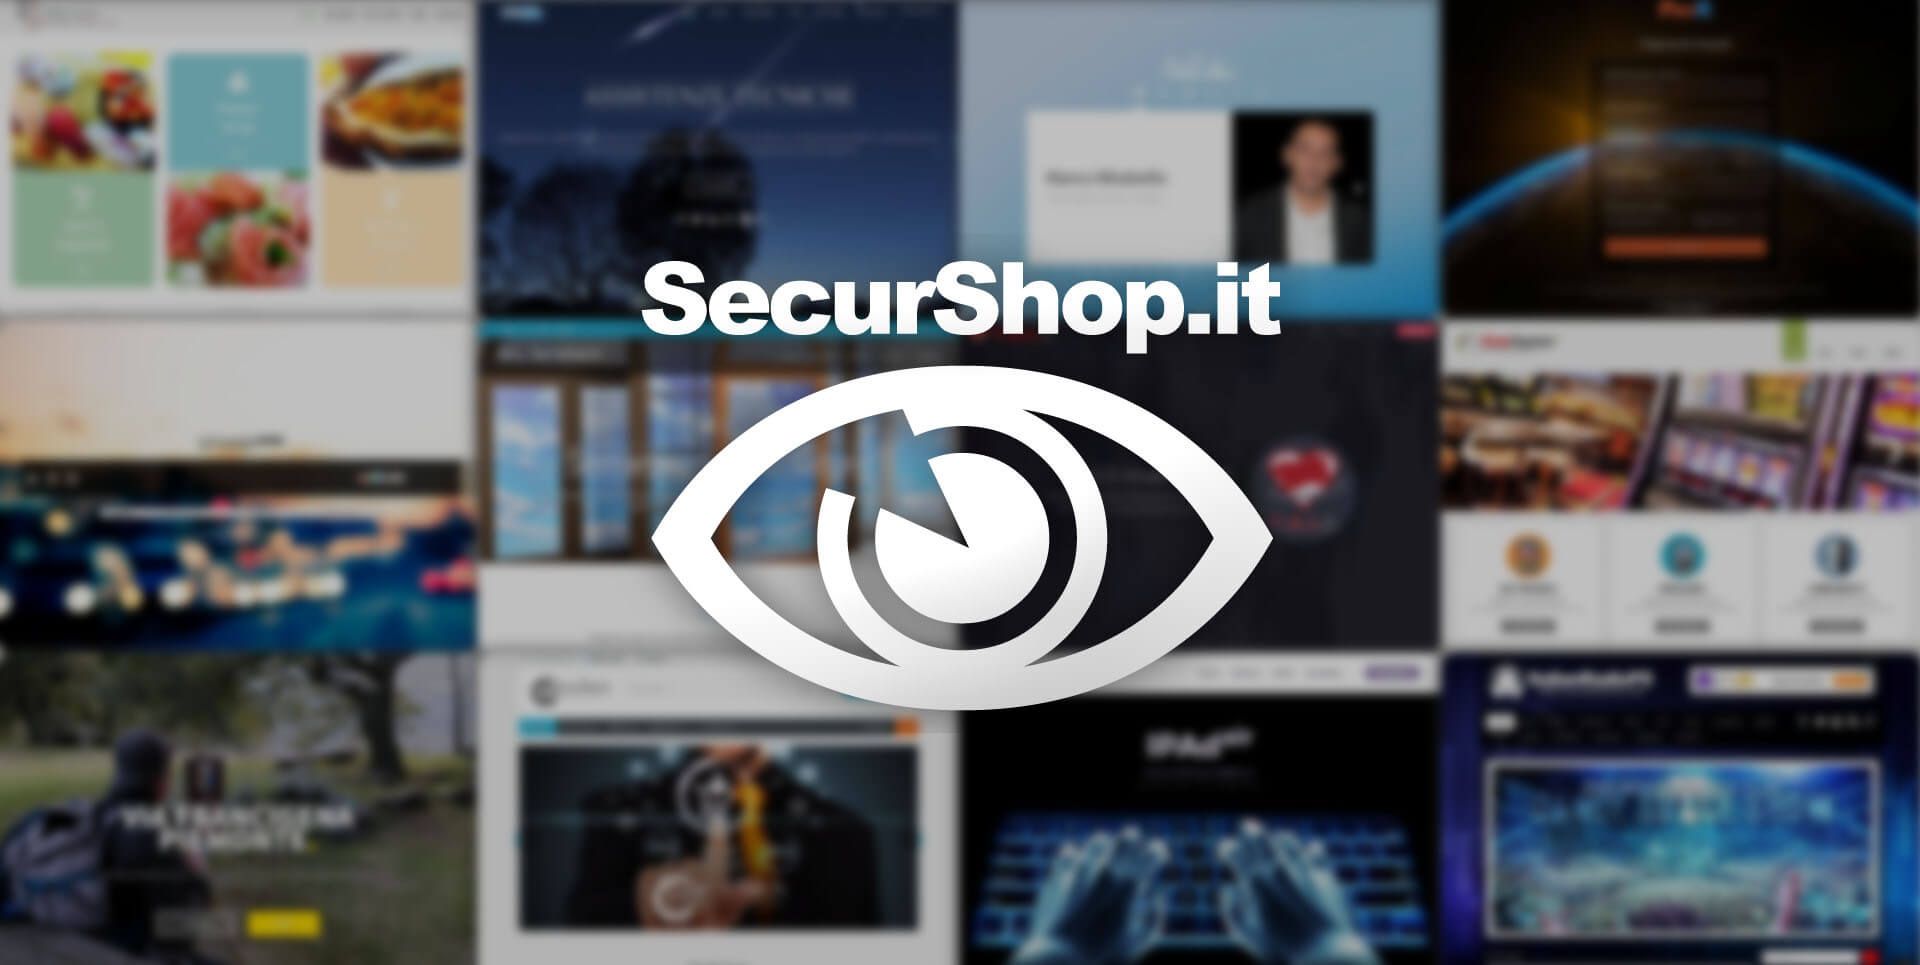 (c) Securshop.it